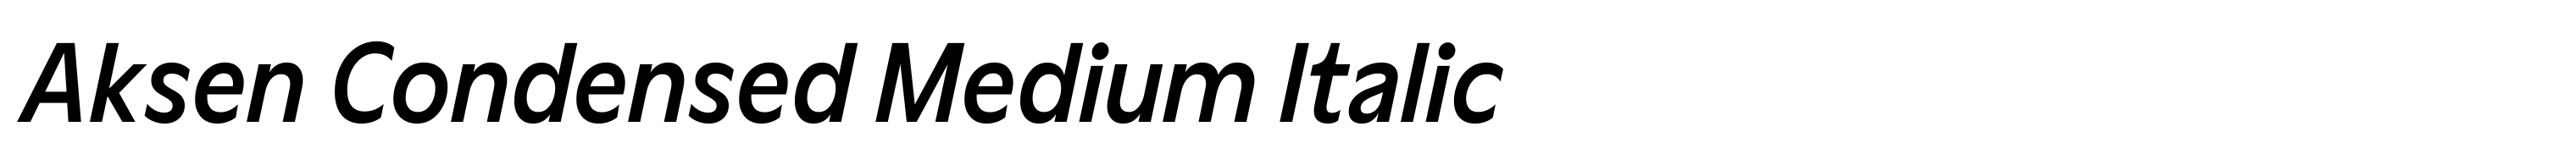 Aksen Condensed Medium Italic